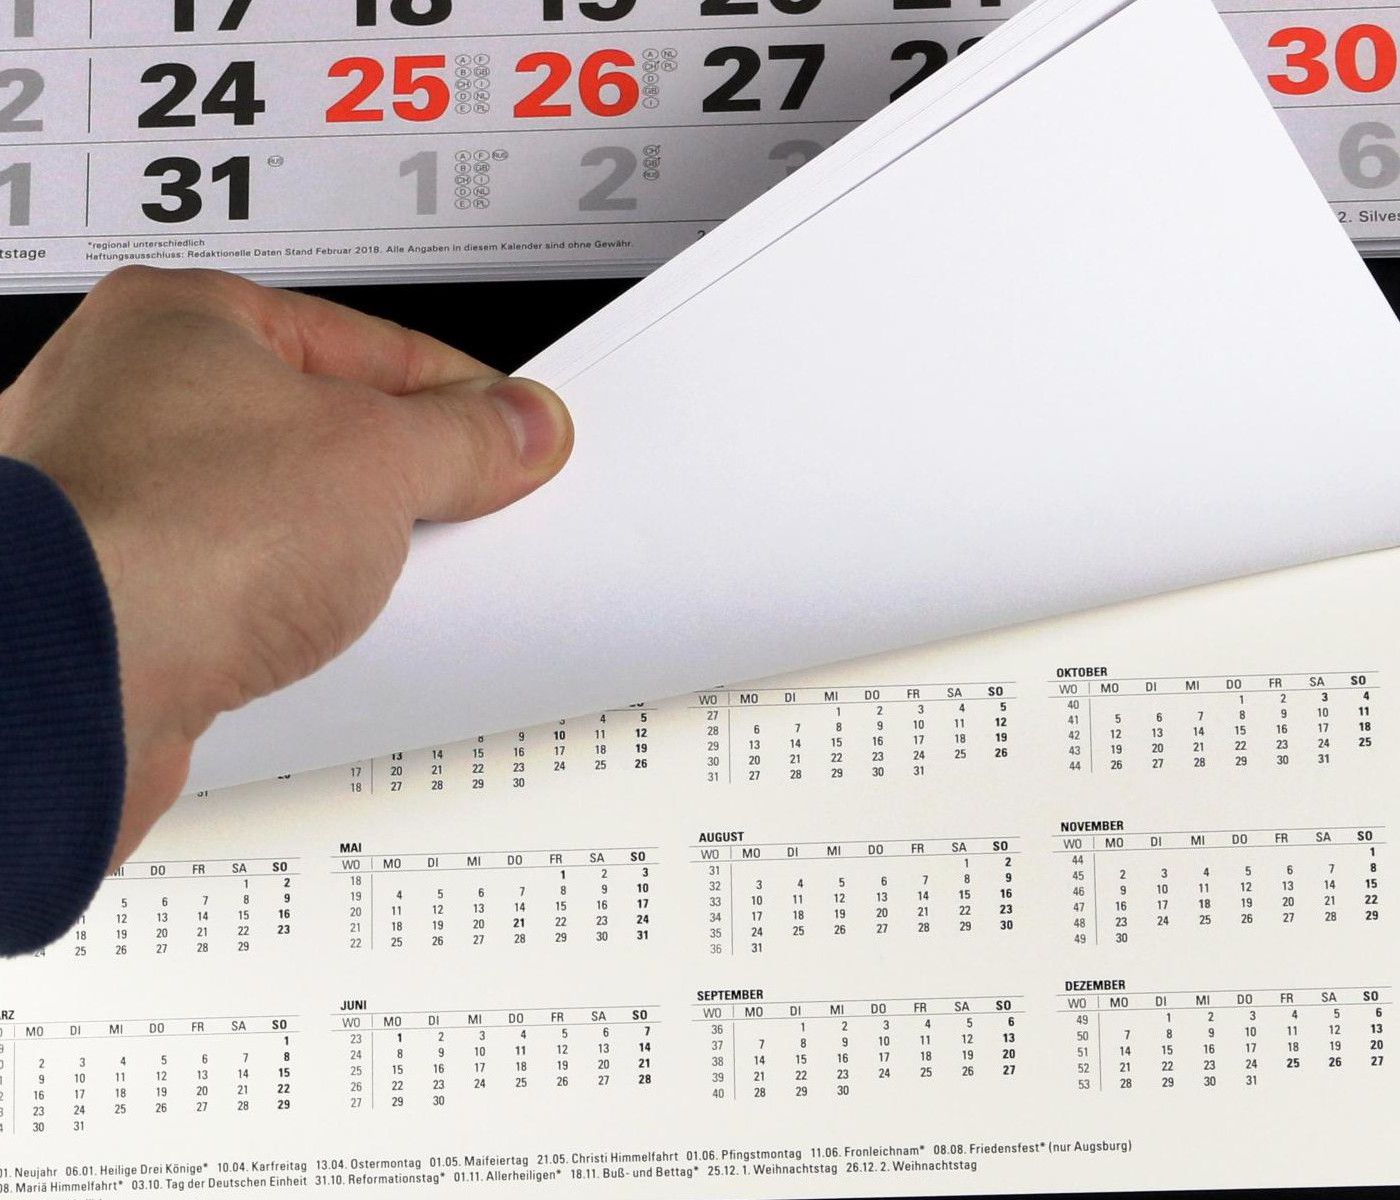 3-Monatskalender 2021  großer Wandkalender Bürokalender Monatskalender Kalender